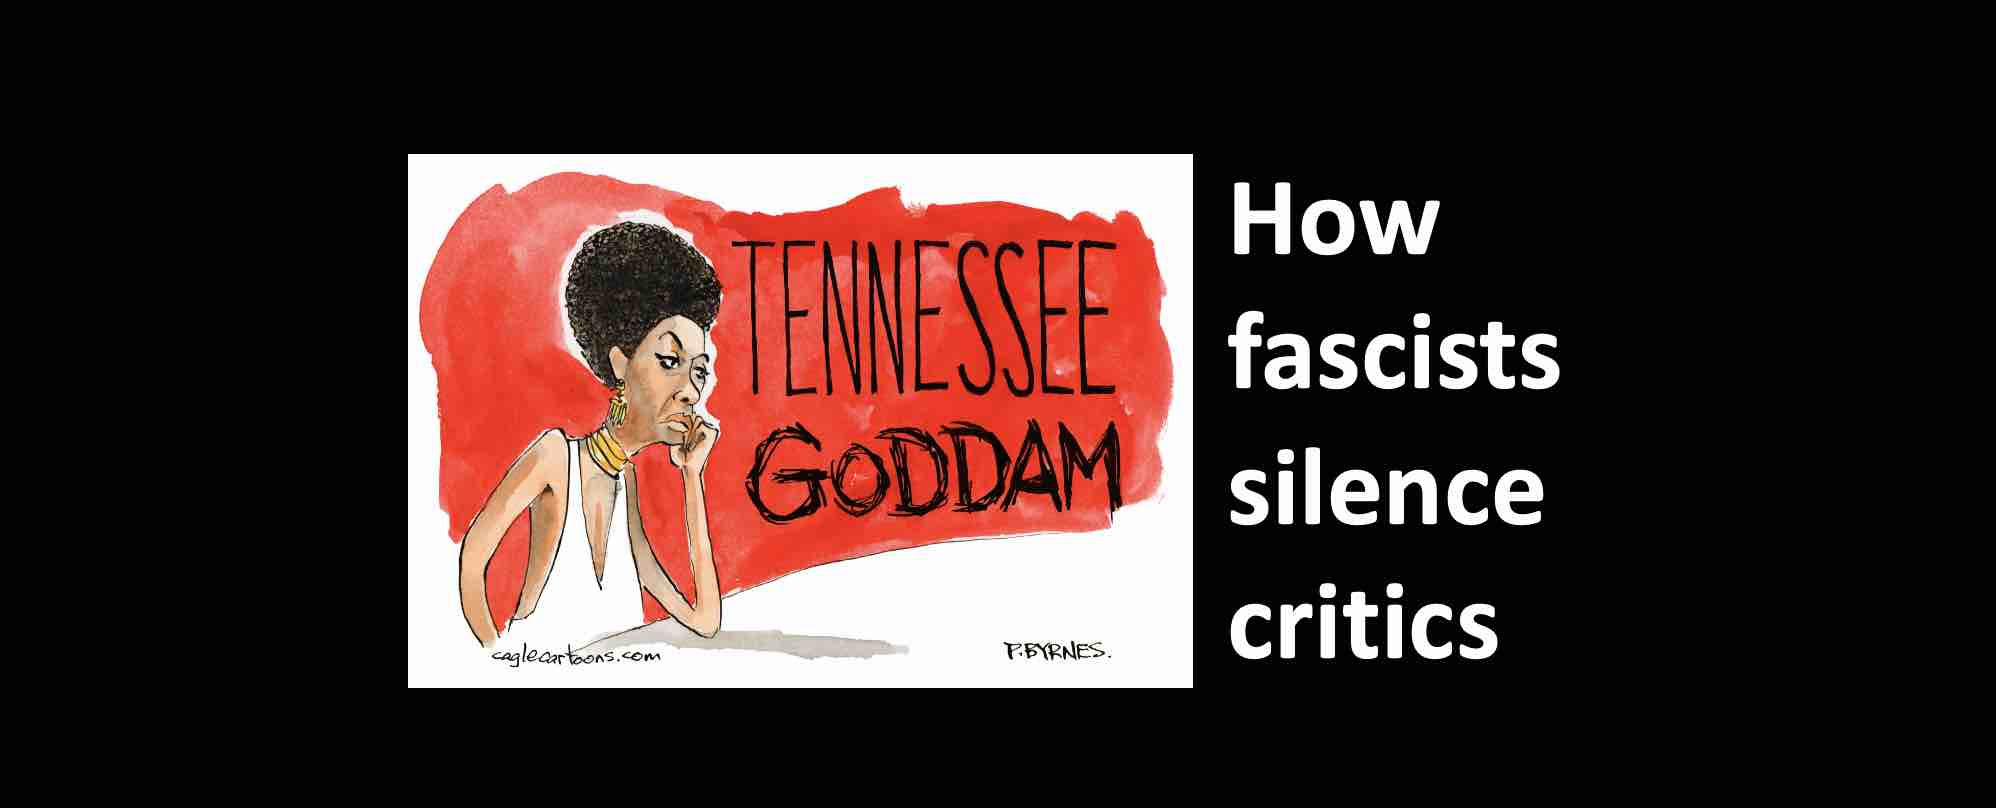 How fascists silence critics